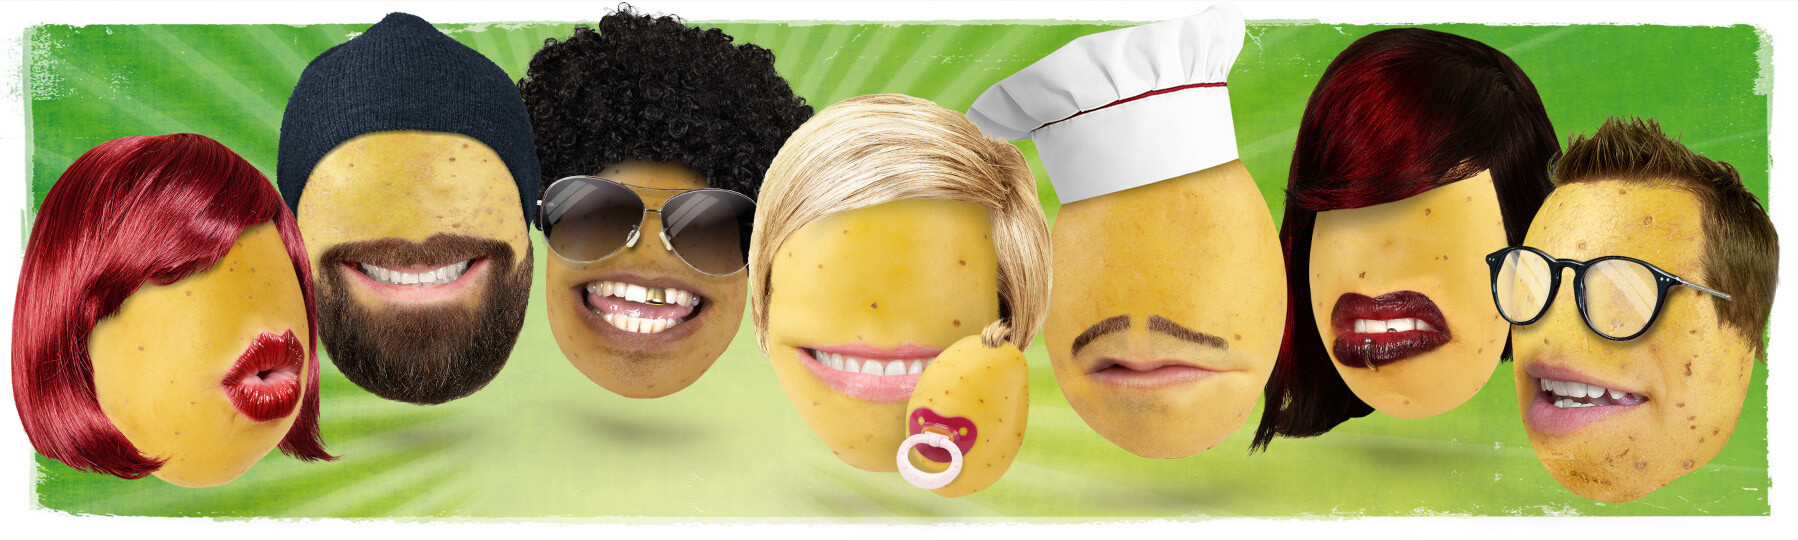 Kartoffelfamilie